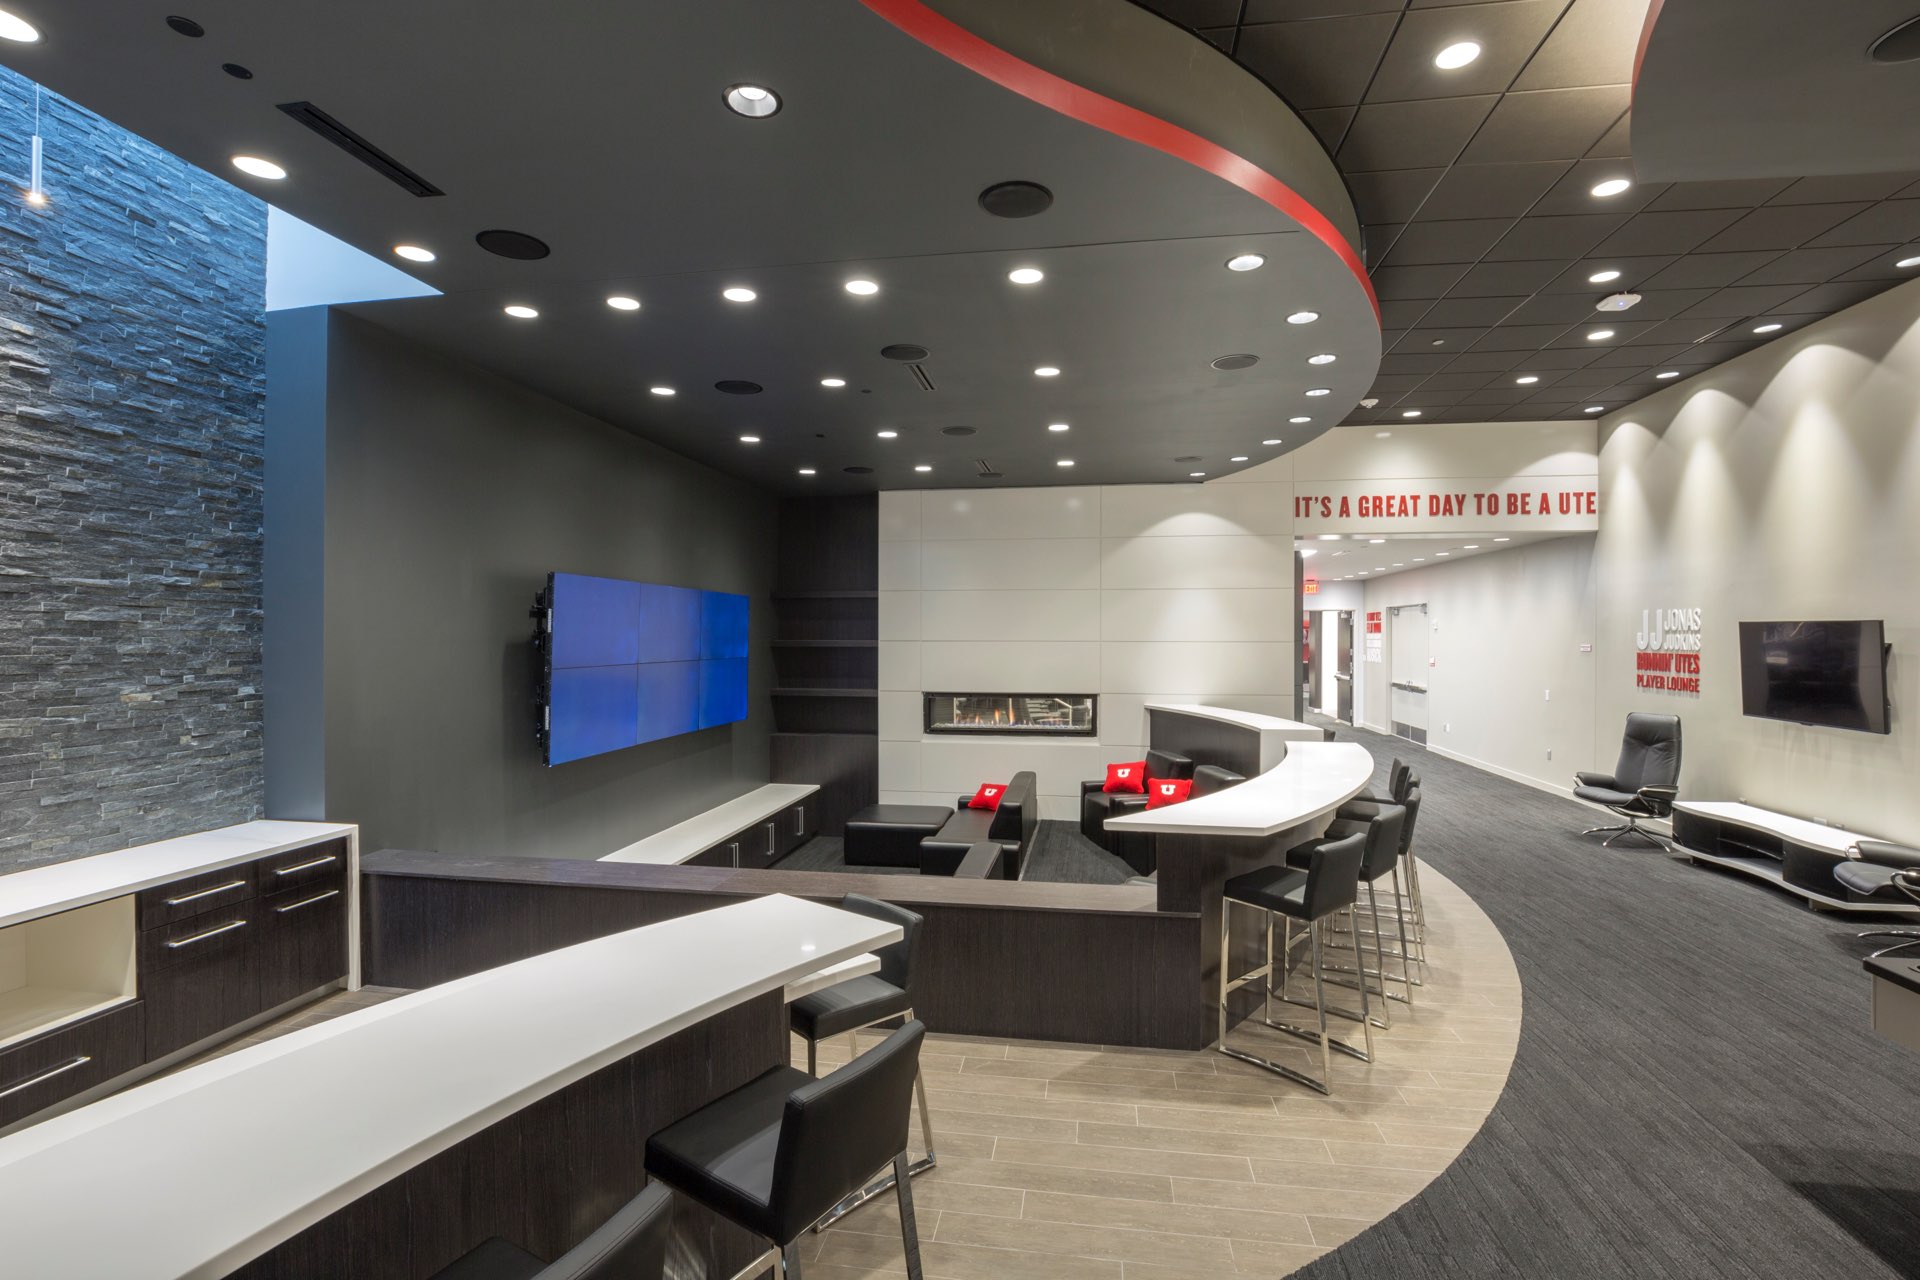 Film room inside the University of Utah Basketball Interior, interior design by Elliott Workgroup